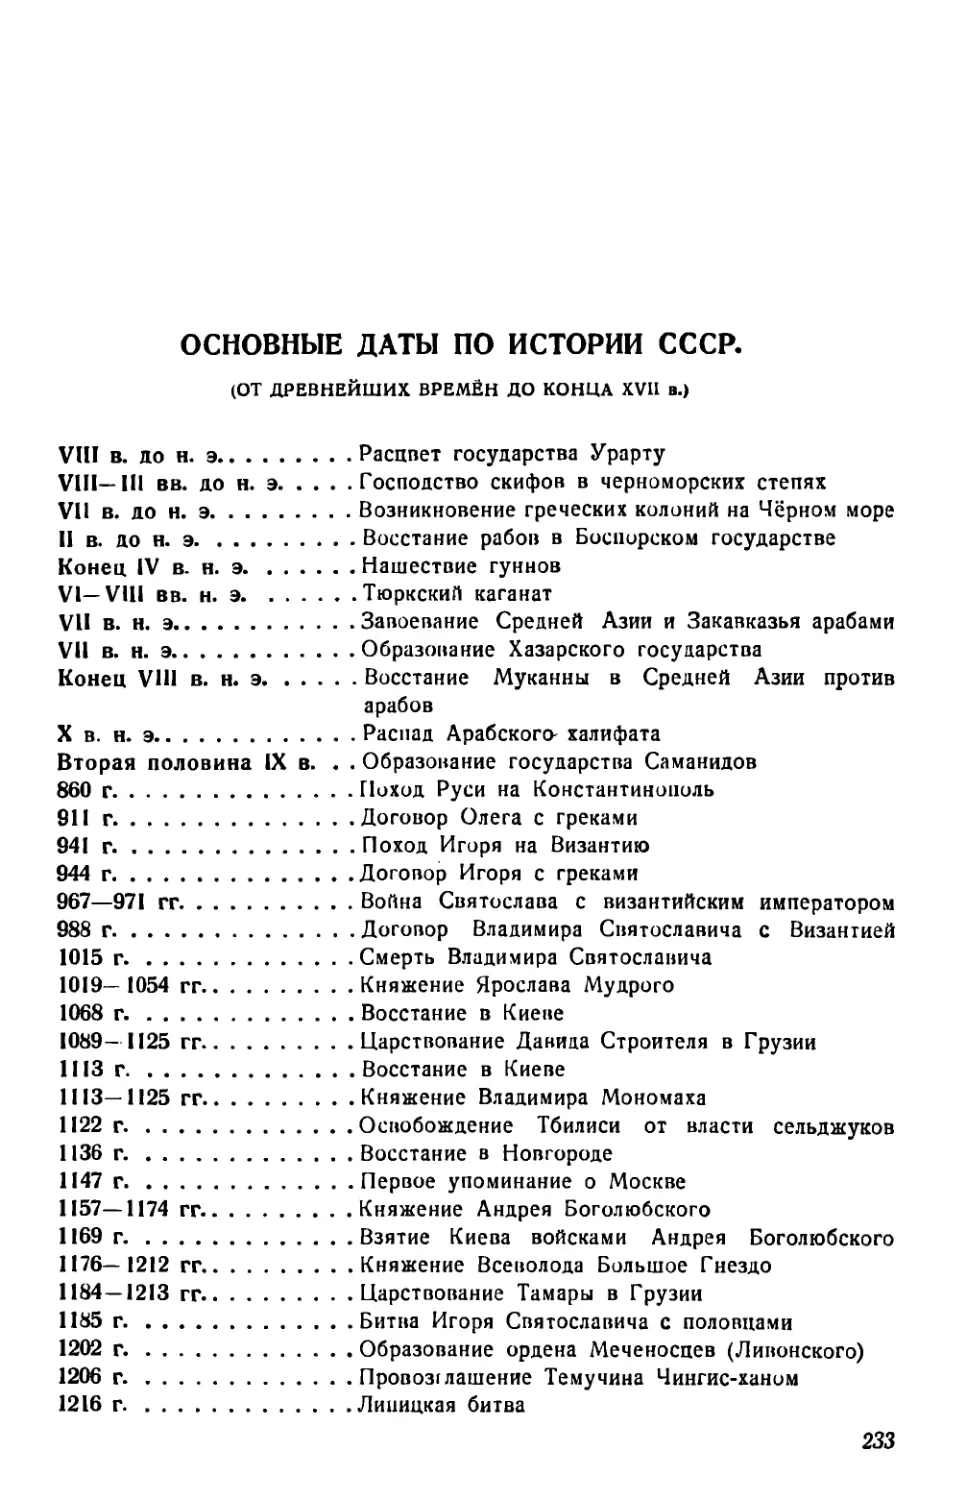 Основные даты по истории СССР